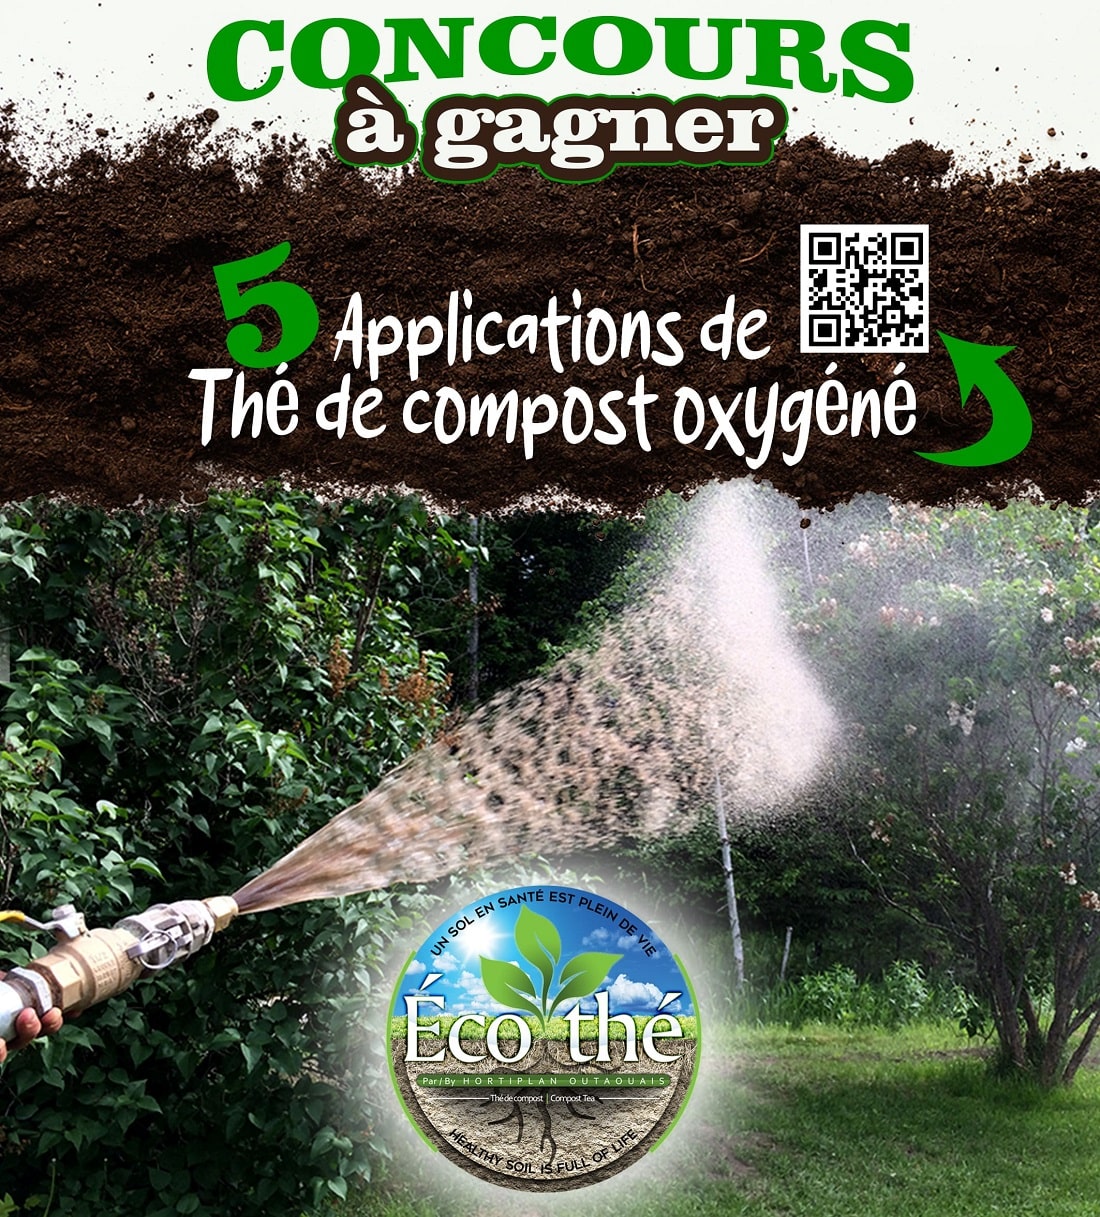 Pulvérisateur en action dans un jardin verdoyant, avec le logo Ecothe et sa promesse d'un sol sain. Participer au concours